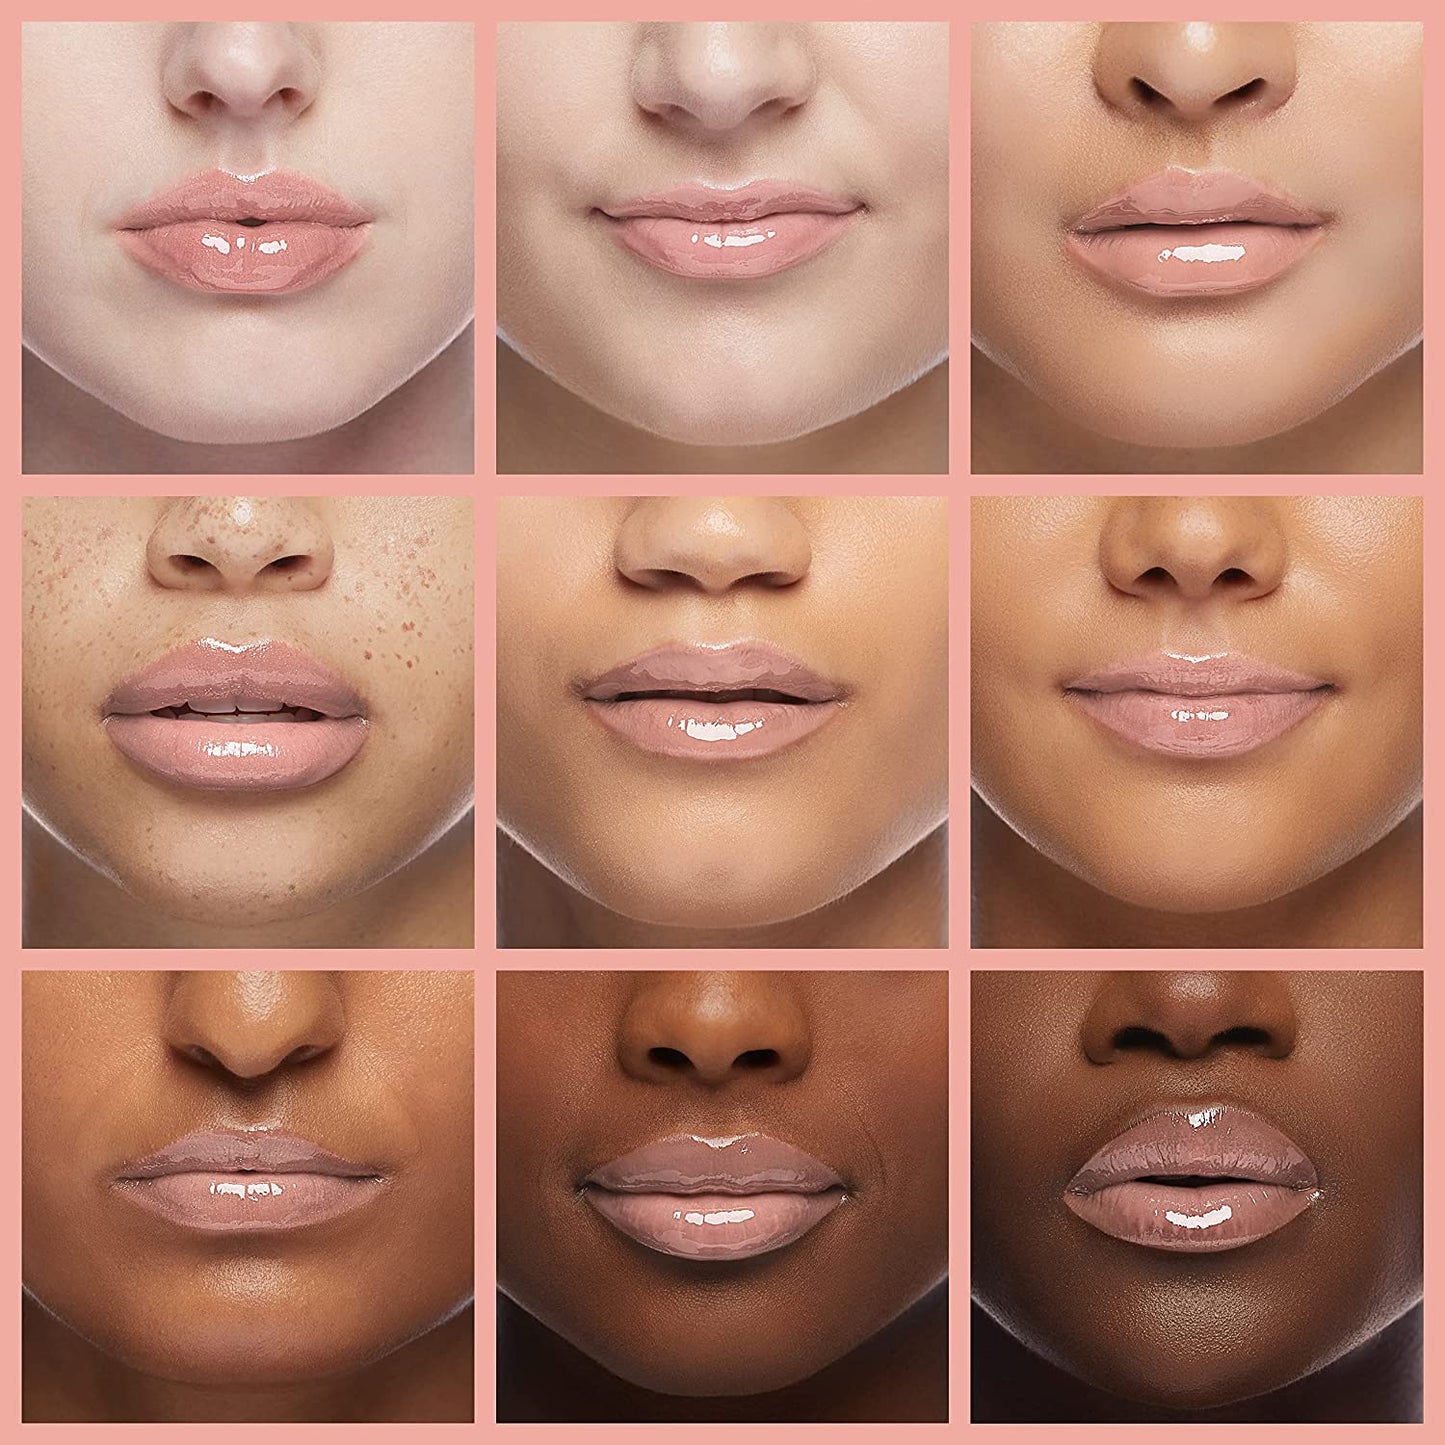 Shimmery Lip Gloss - Aquarius